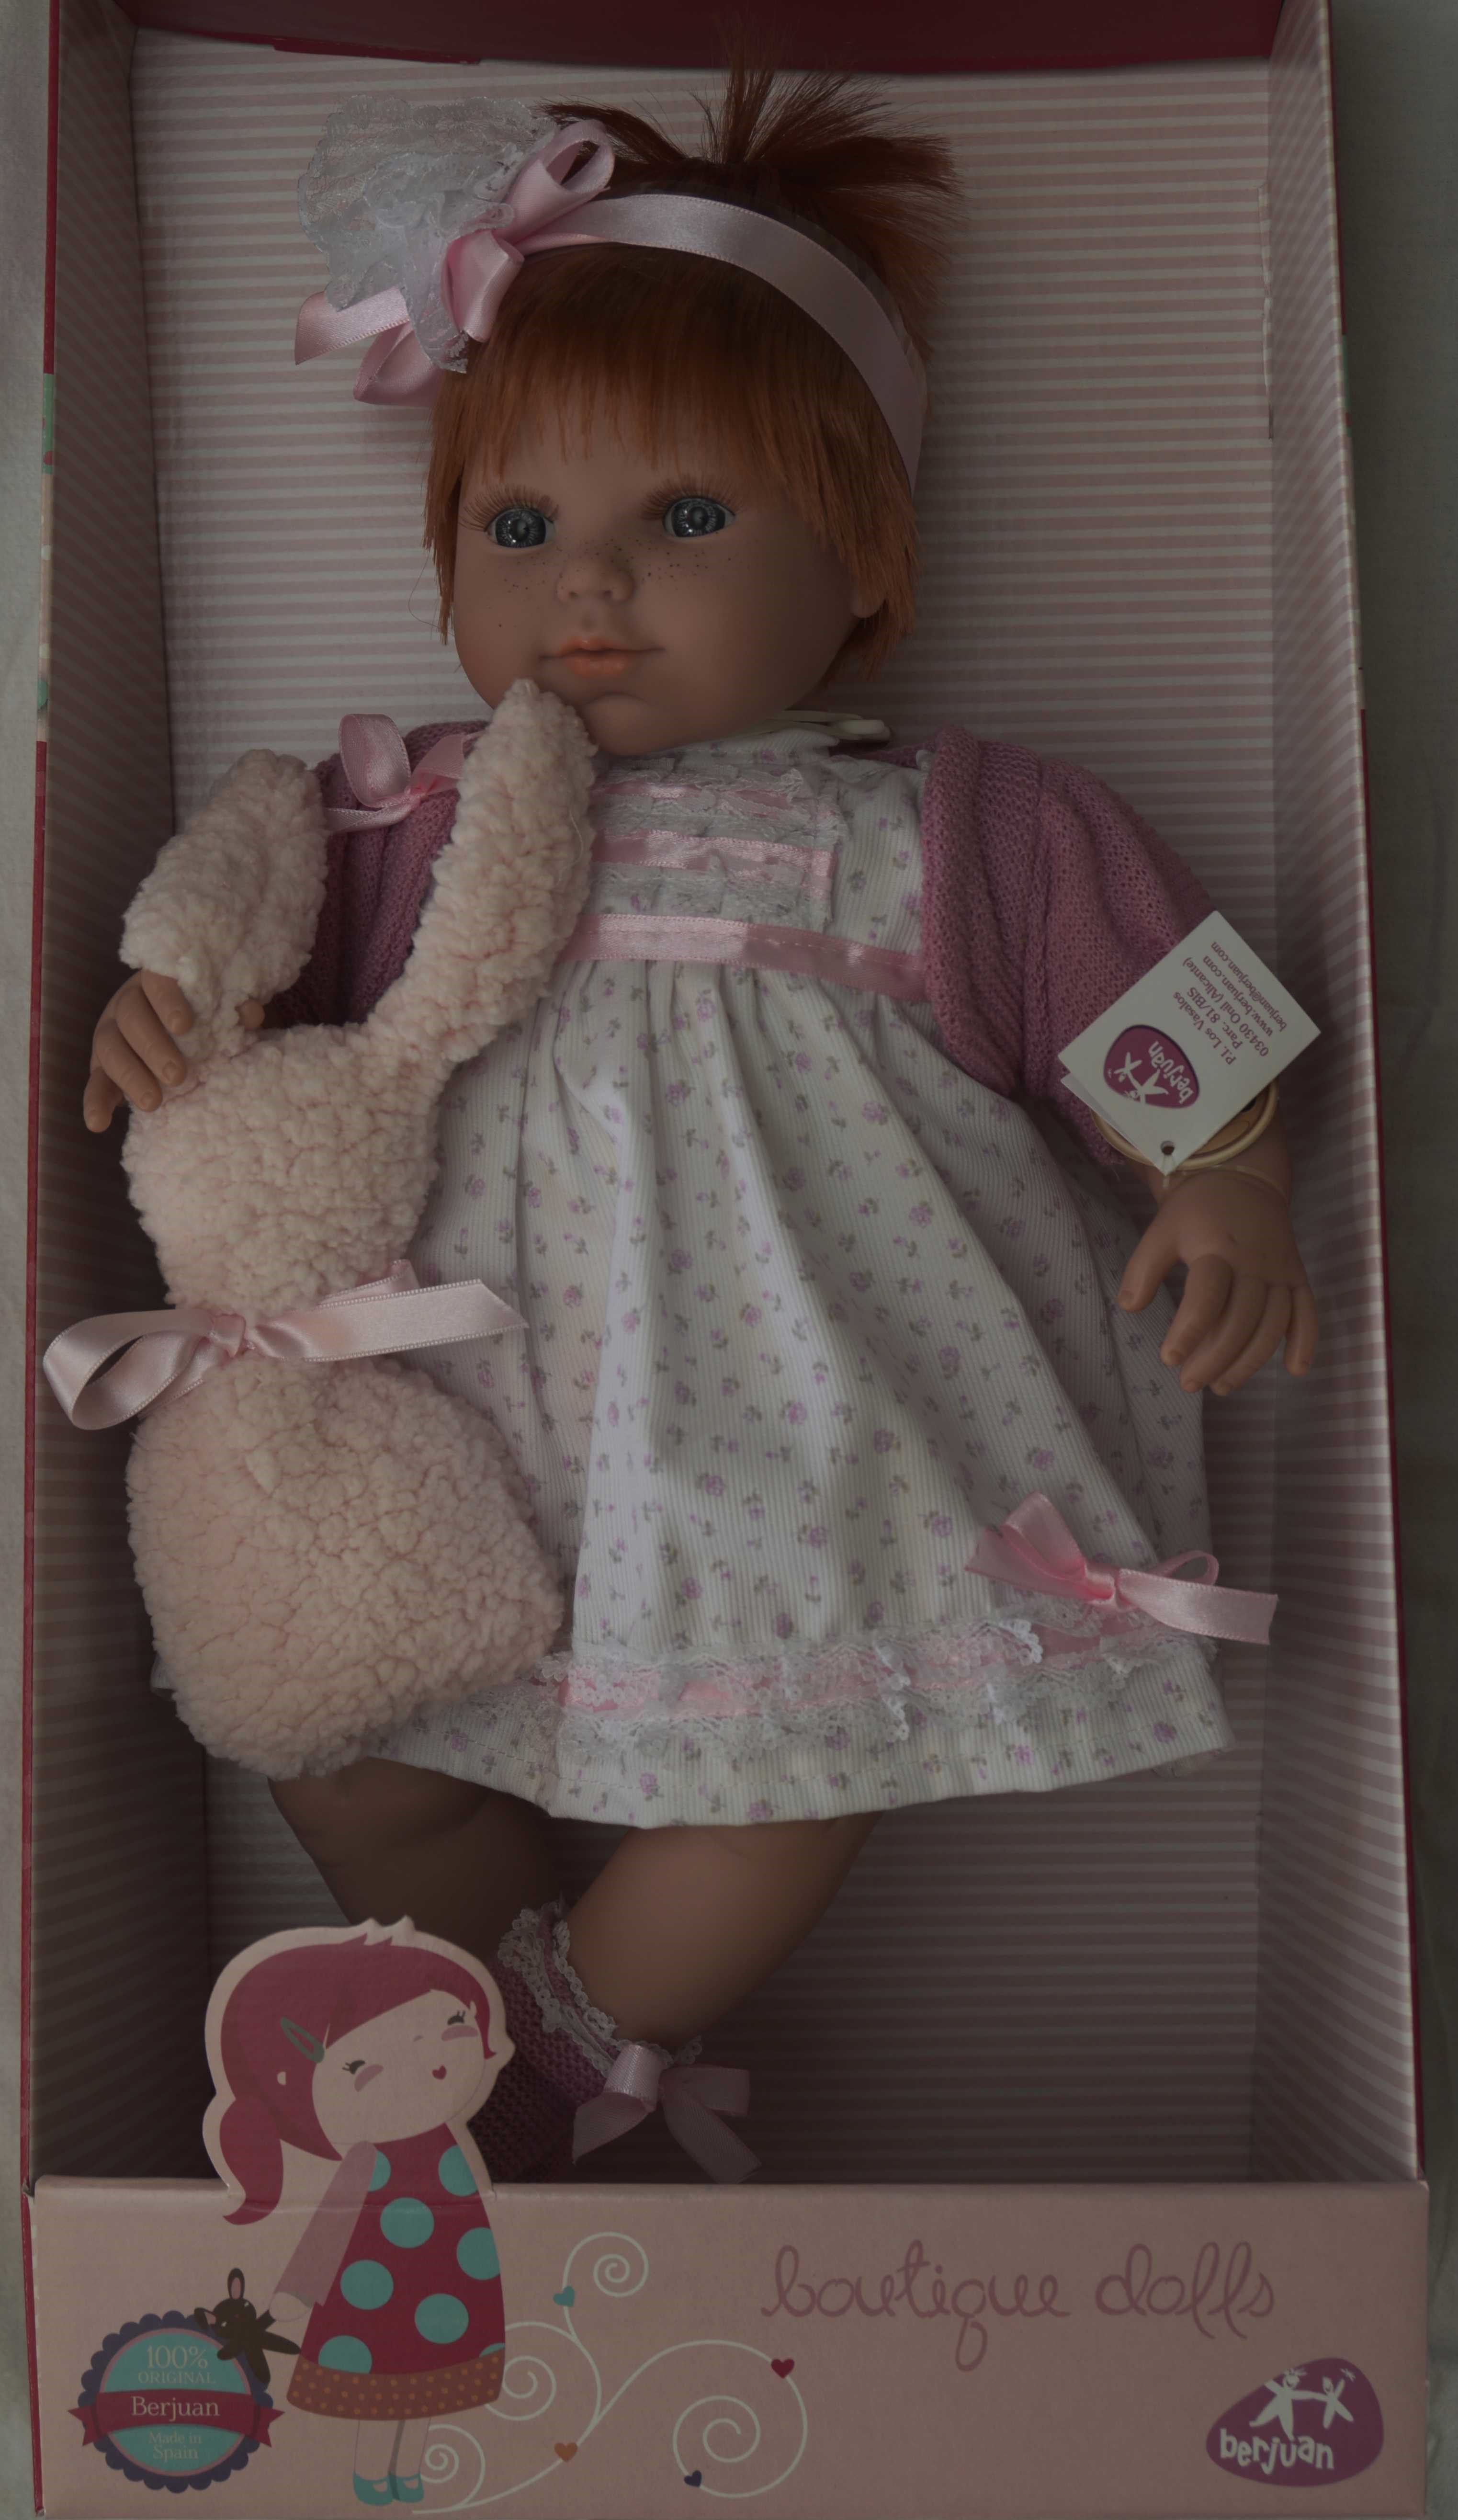 Realistická panenka holčička Dominika od firmy Berjuan ze Španělska